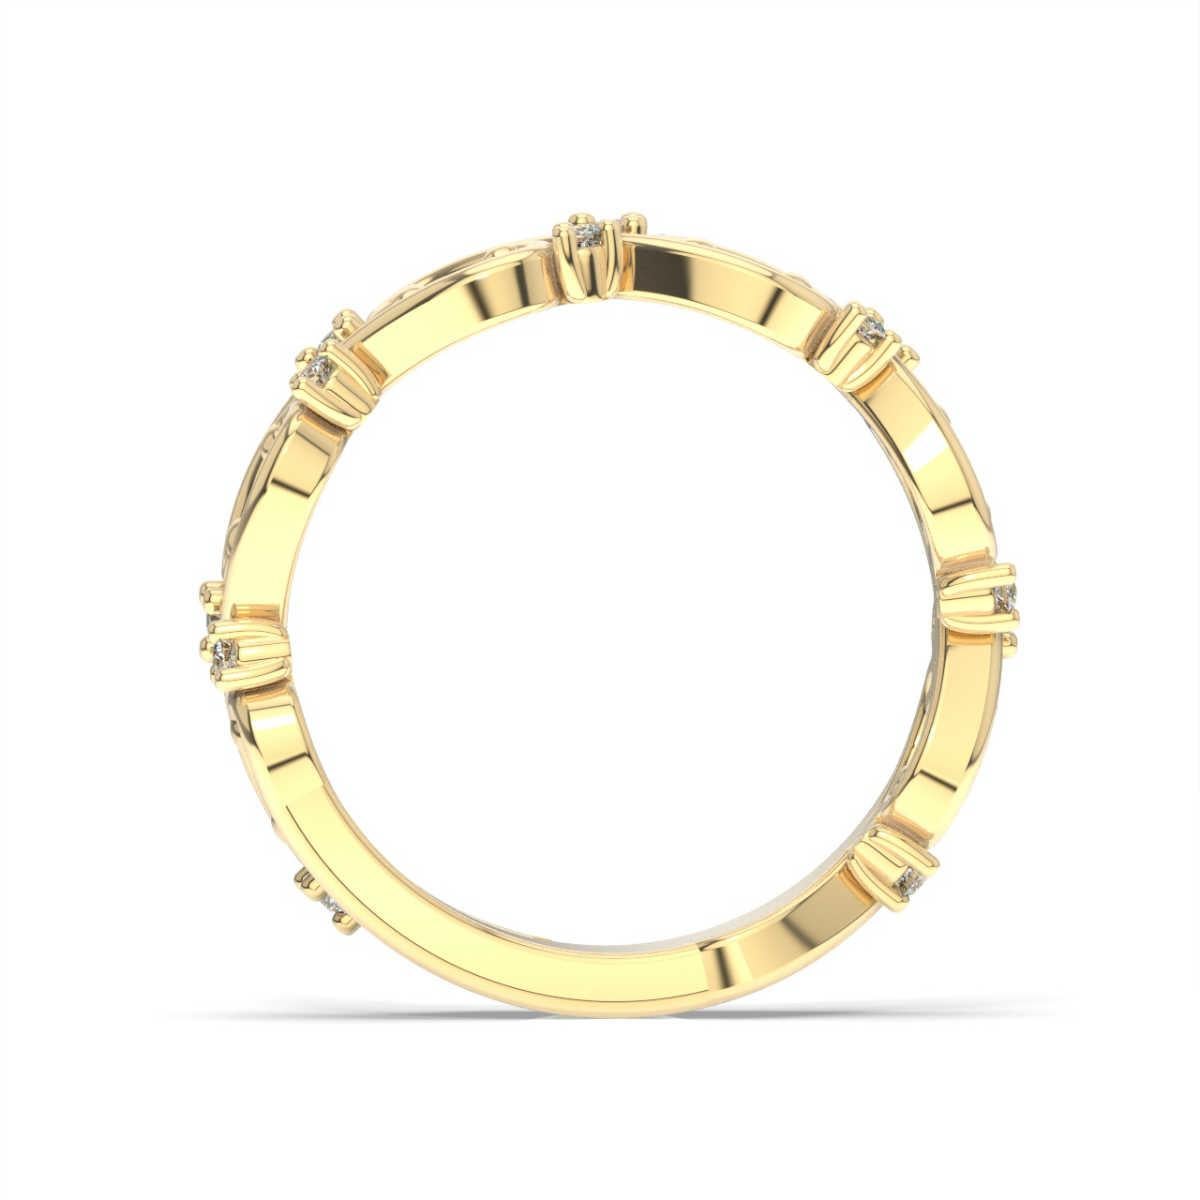 Dieses Ringband zeigt Stränge aus zartem Edelmetall, die zwischen glänzenden, runden Diamanten verwoben sind. Erleben Sie den Unterschied!

Einzelheiten zum Produkt: 

Farbe des zentralen Edelsteins: WEISS
Seite Edelstein Typ: NATURDIAMANT
Seite